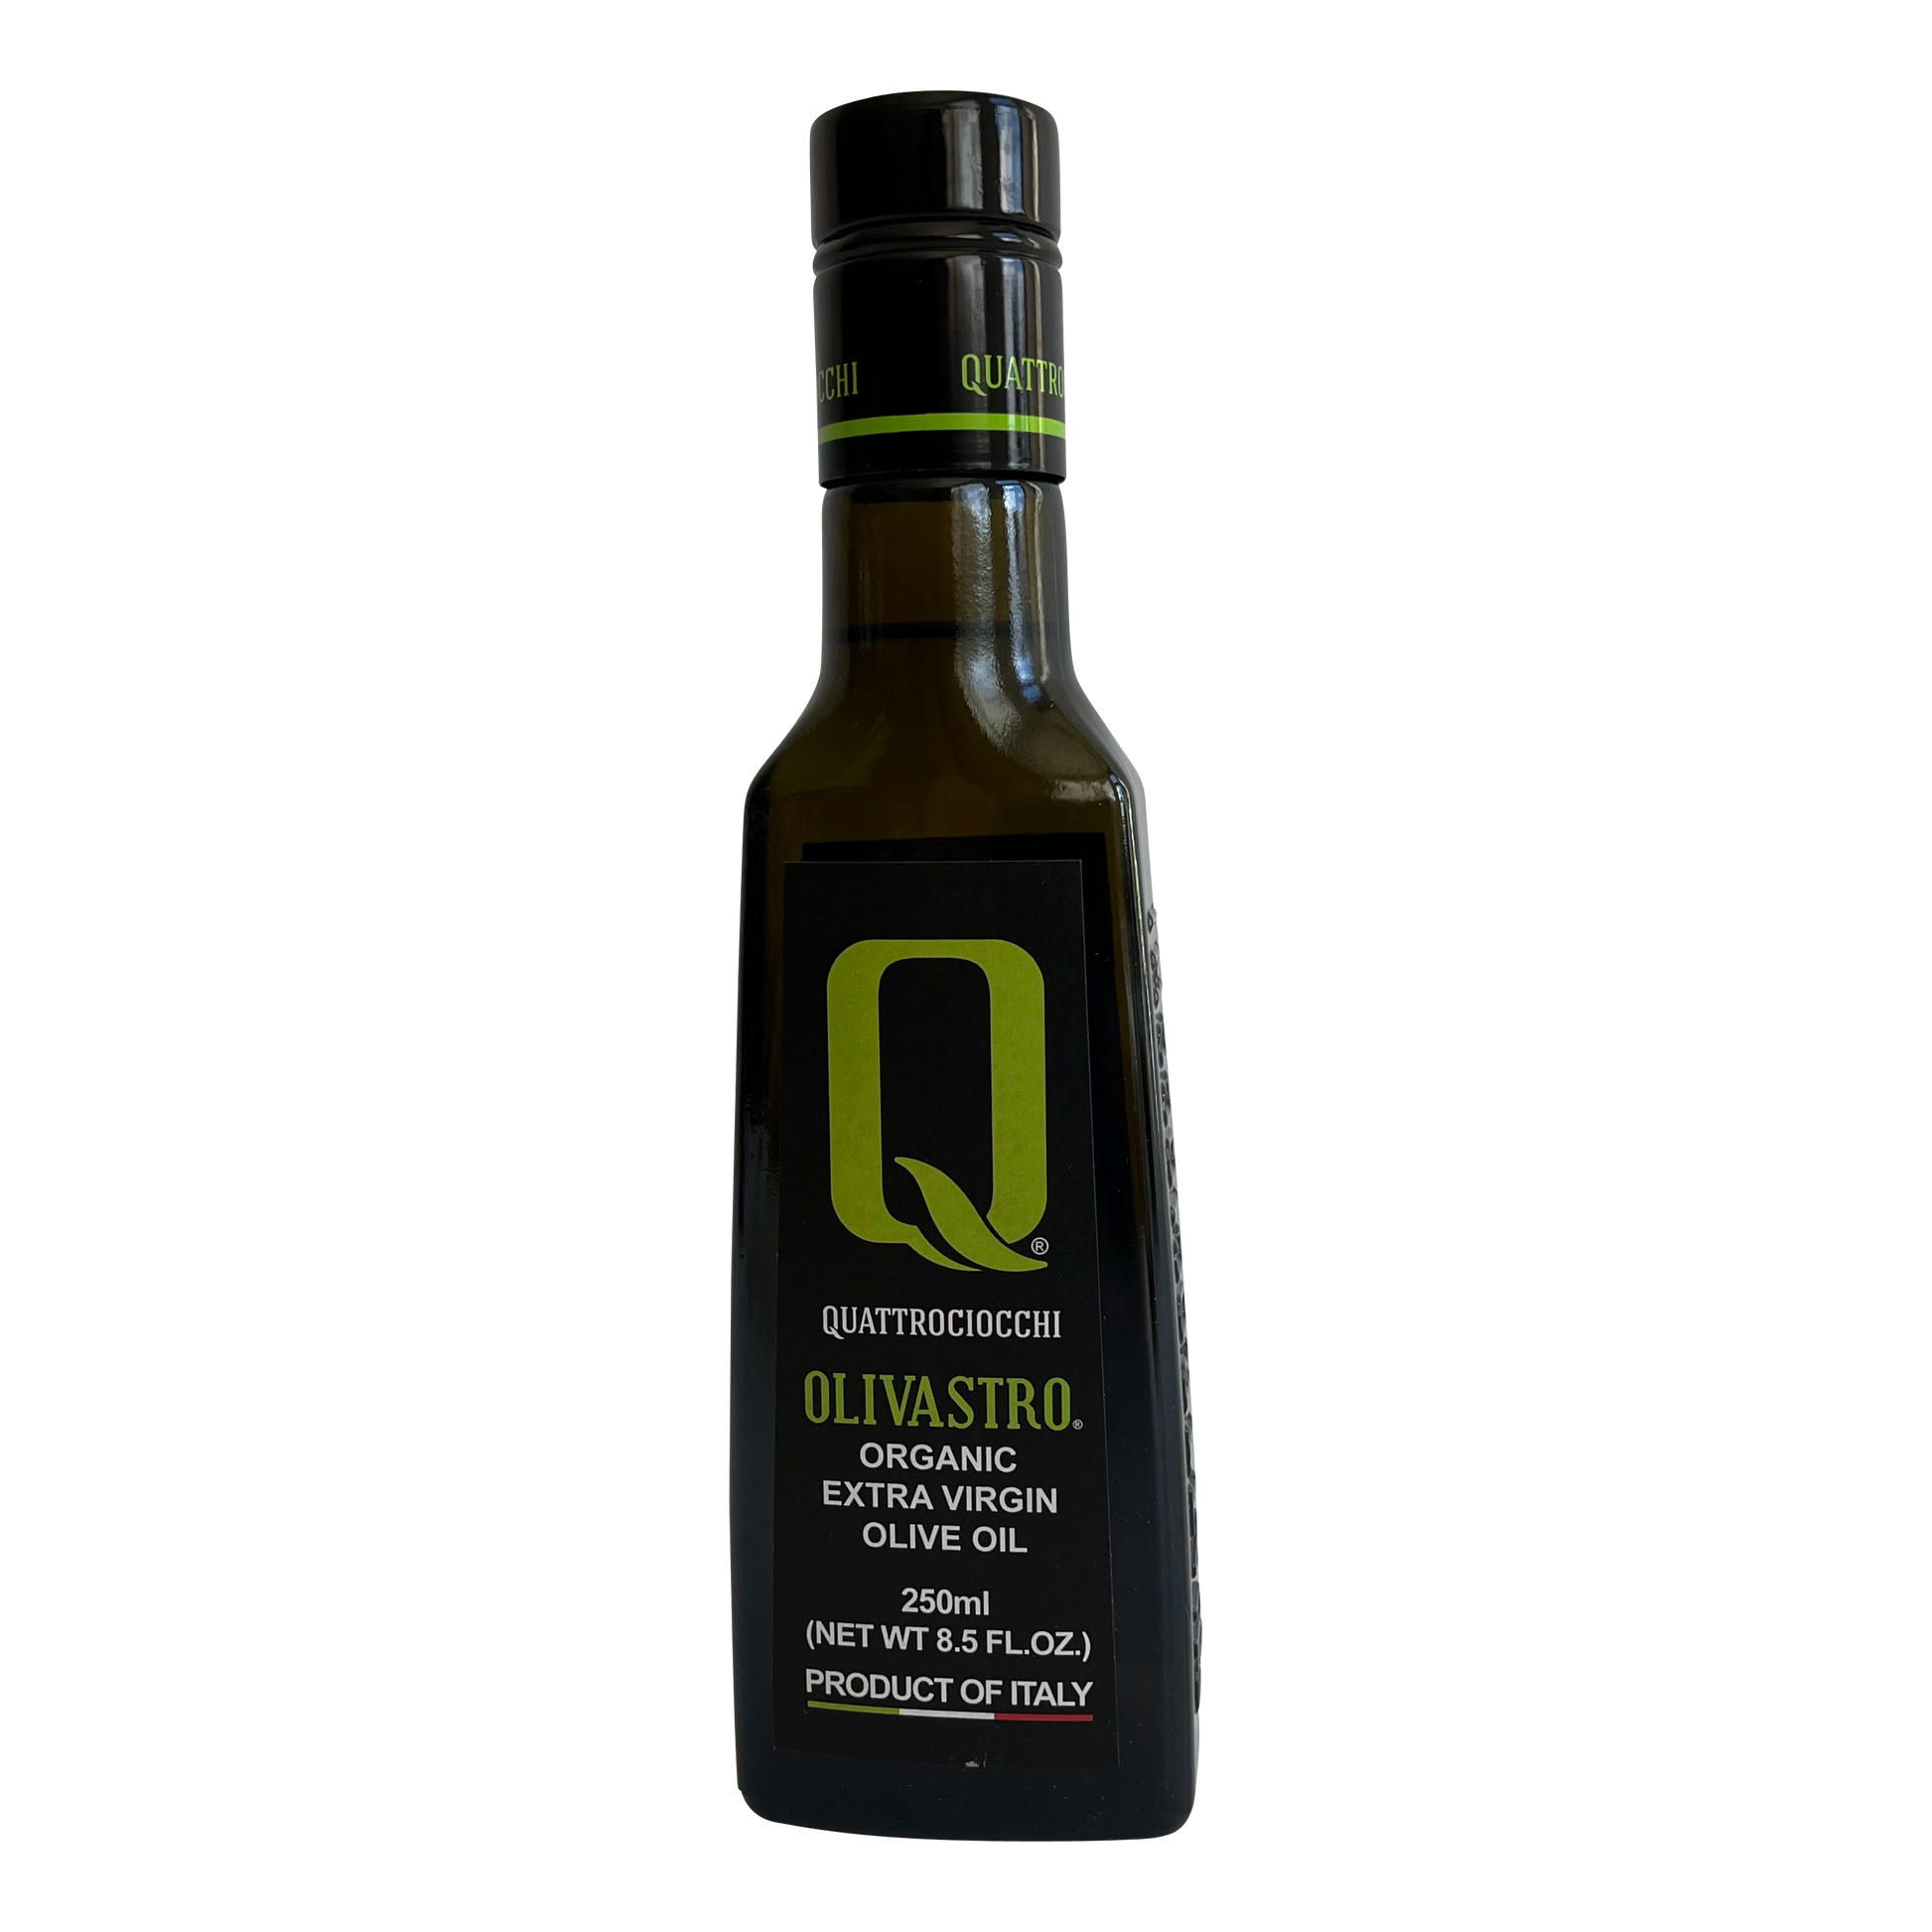 Quattrociocchi Olivastro Biologica Extra Virgin Olive Oil QUA-071